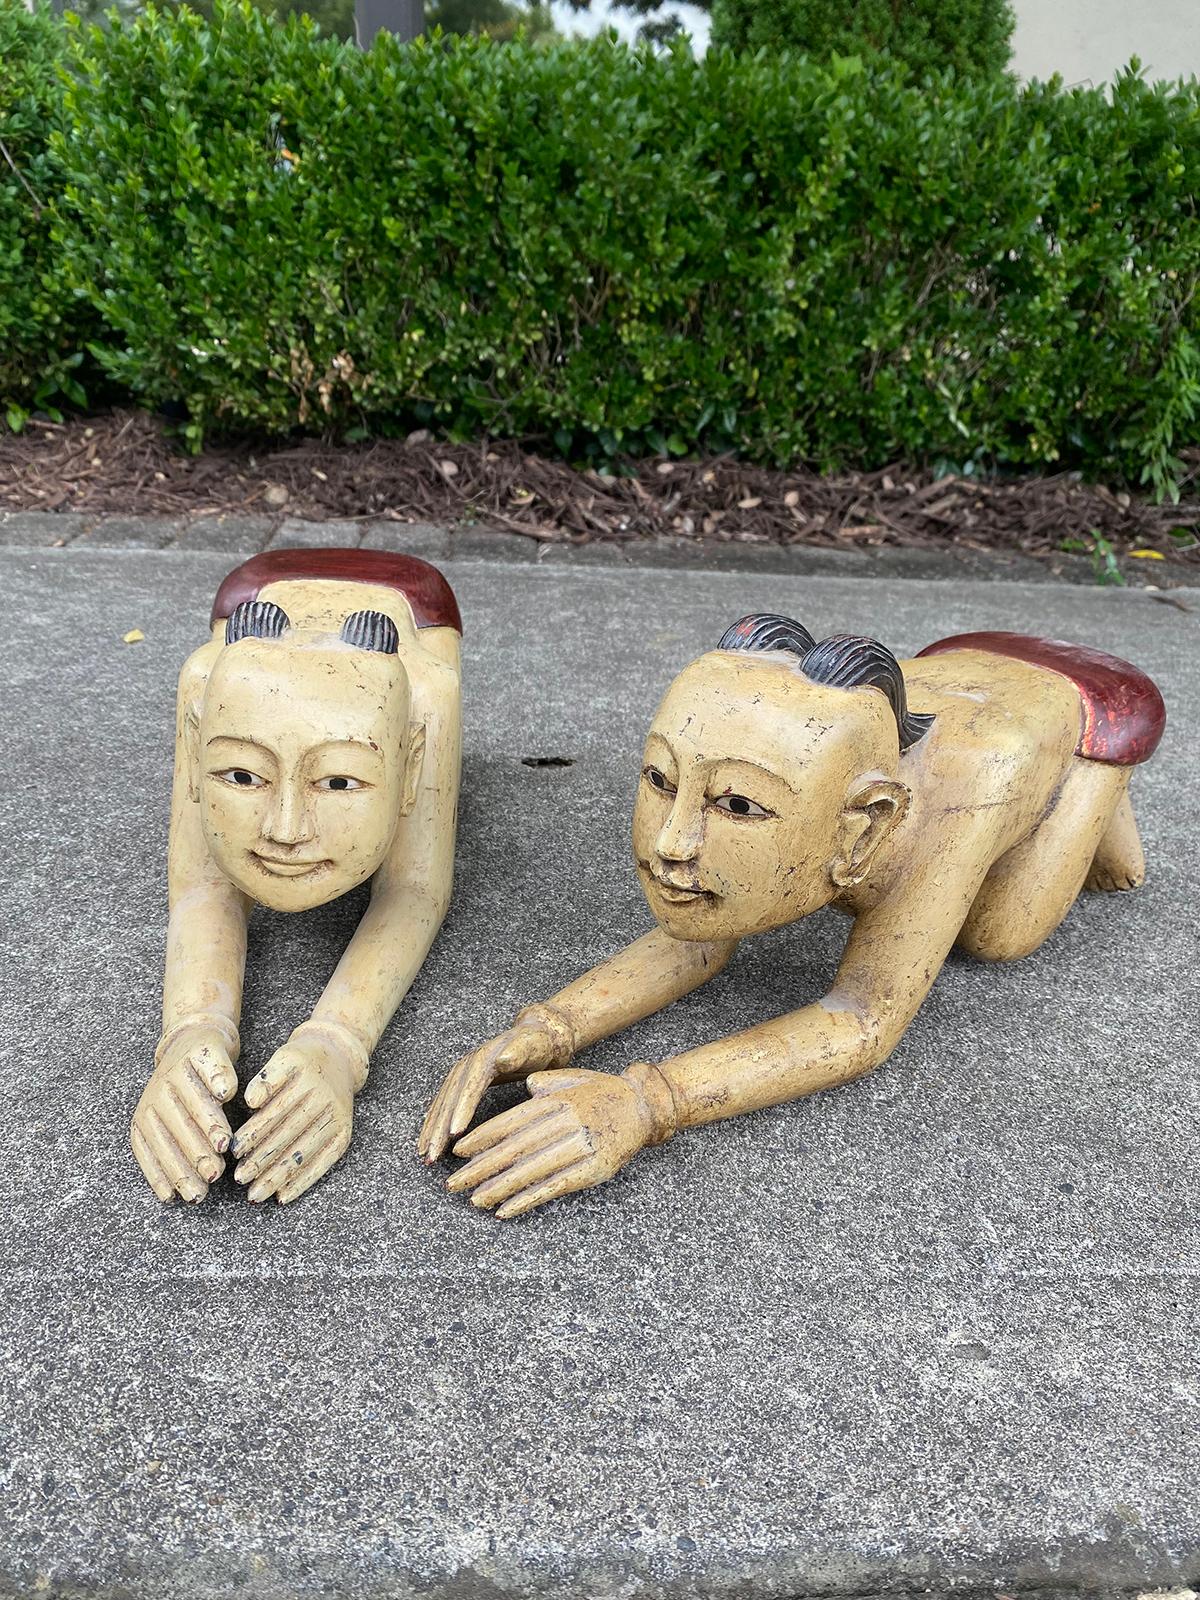 Pair of mid-20th century carved wooden Thai or Burmese kneeling figures.